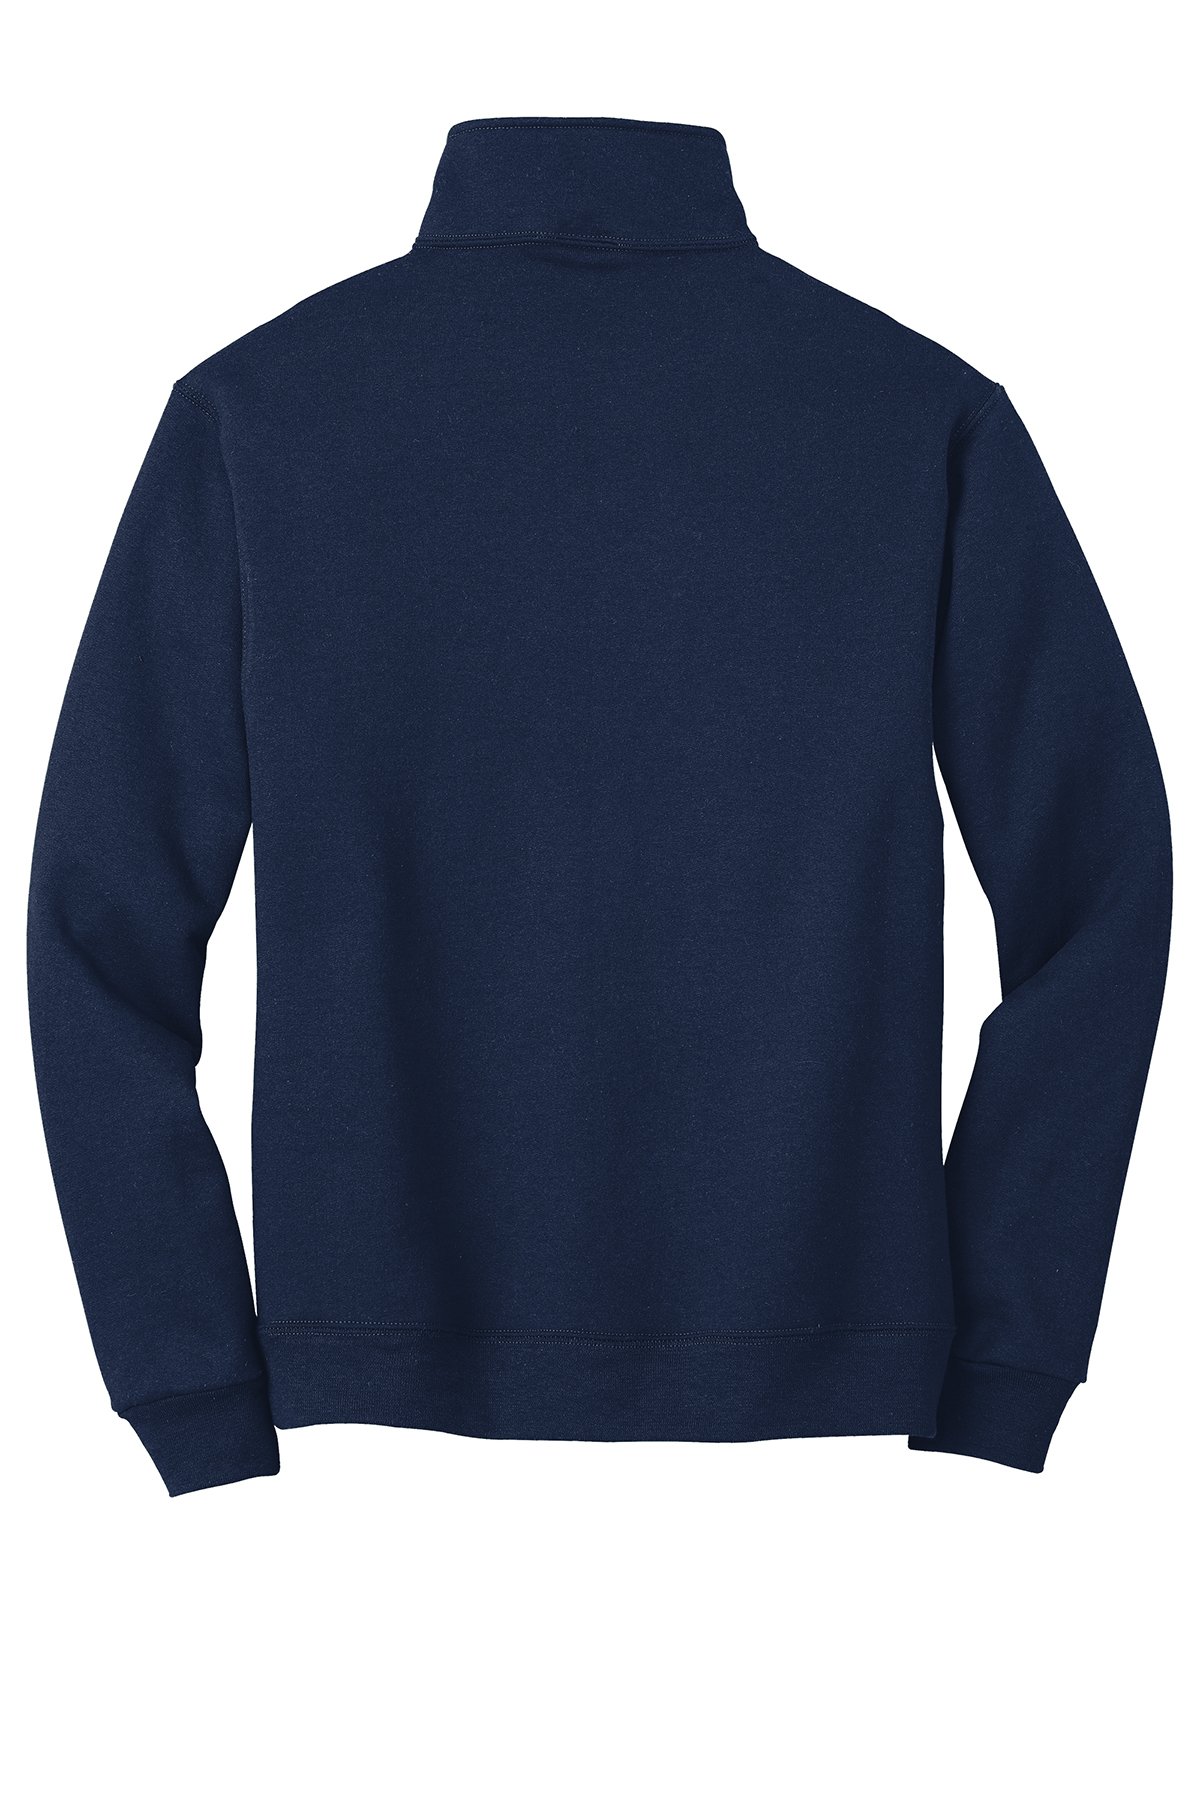 Jerzees Men's Quarter-Zip Cadet Sweatshirt, Vintage Heather Navy